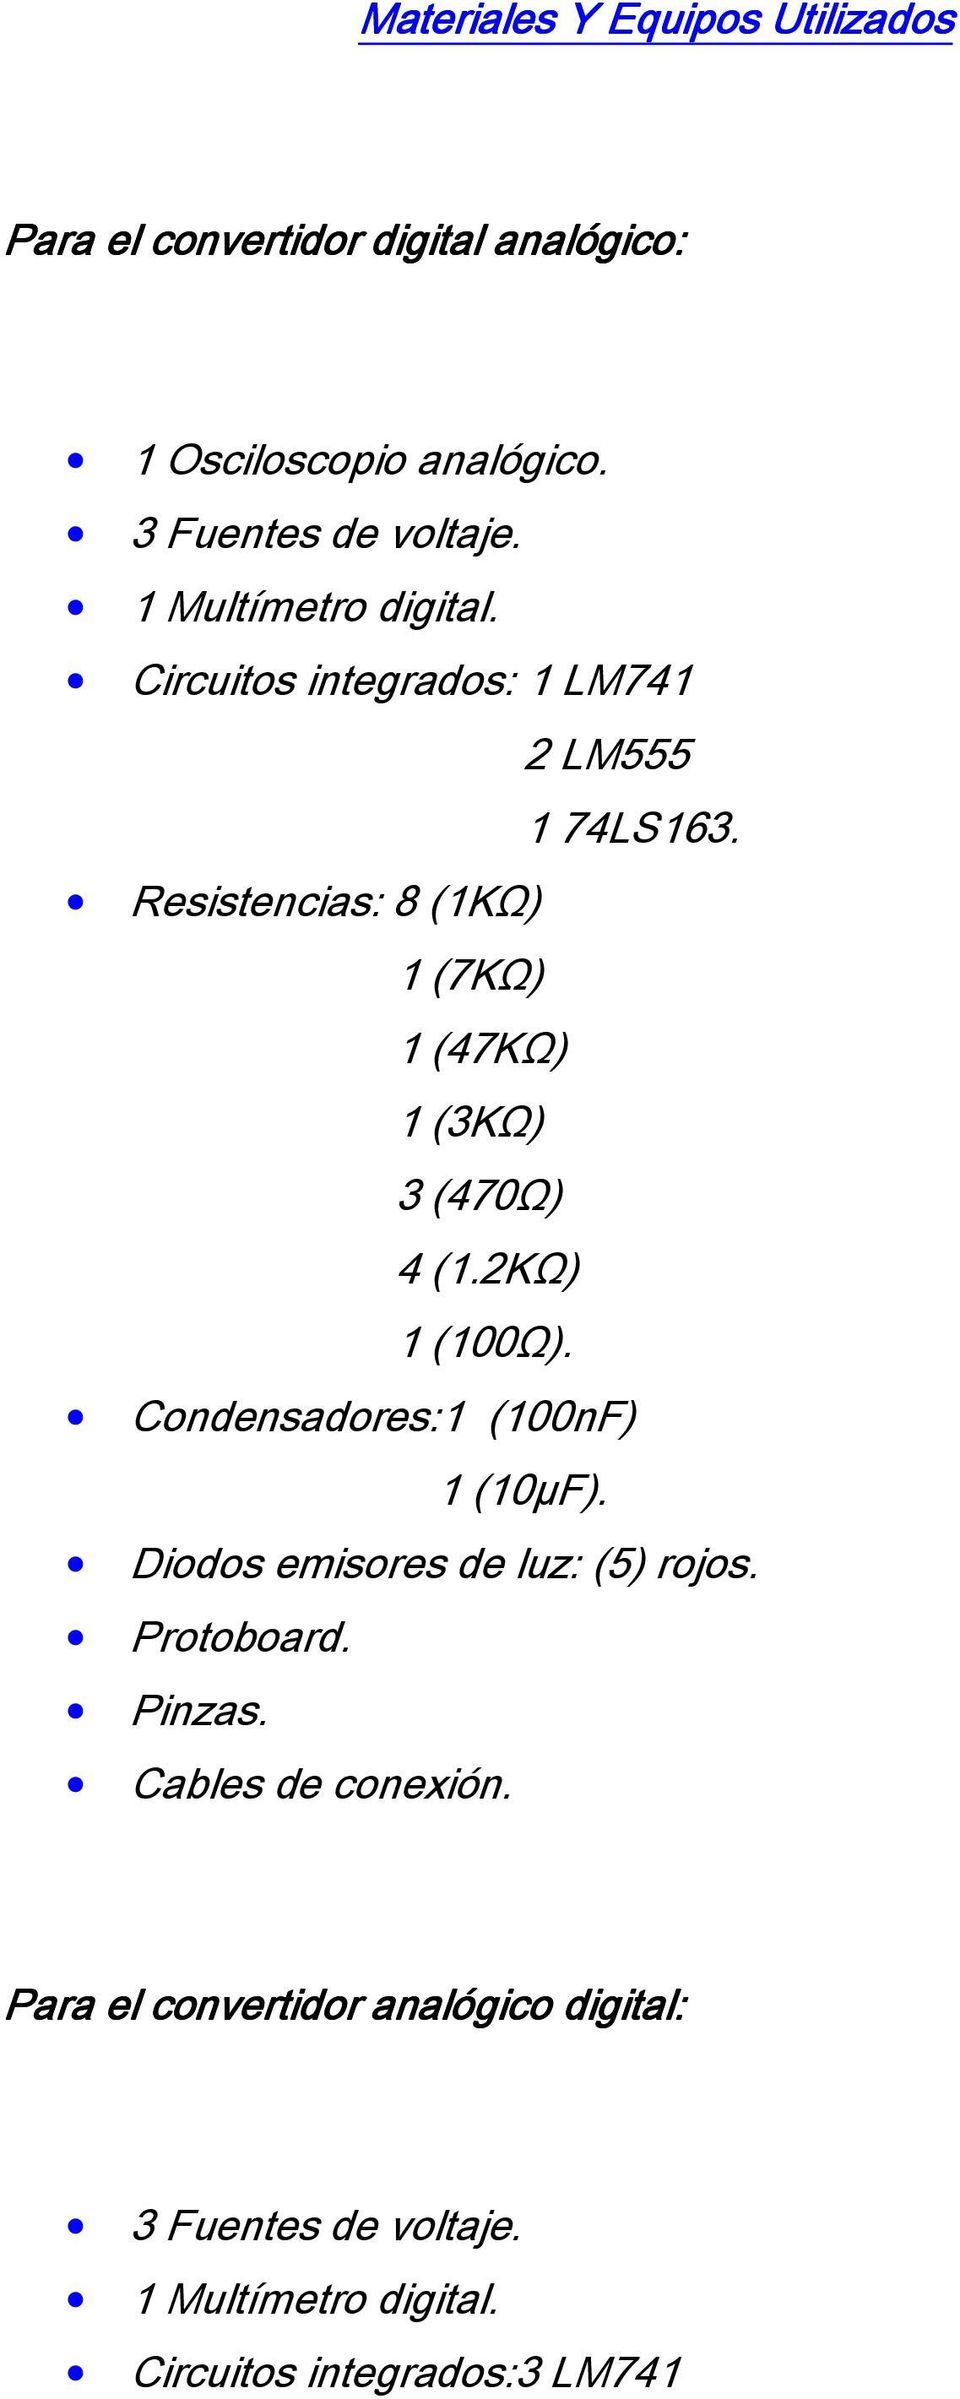 Resistencias: 8 (1KΩ) 1 (7KΩ) 1 (47KΩ) 1 (3KΩ) 3 (470Ω) 4 (1.2KΩ) 1 (100Ω). Condensadores:1 (100nF) 1 (10µF).